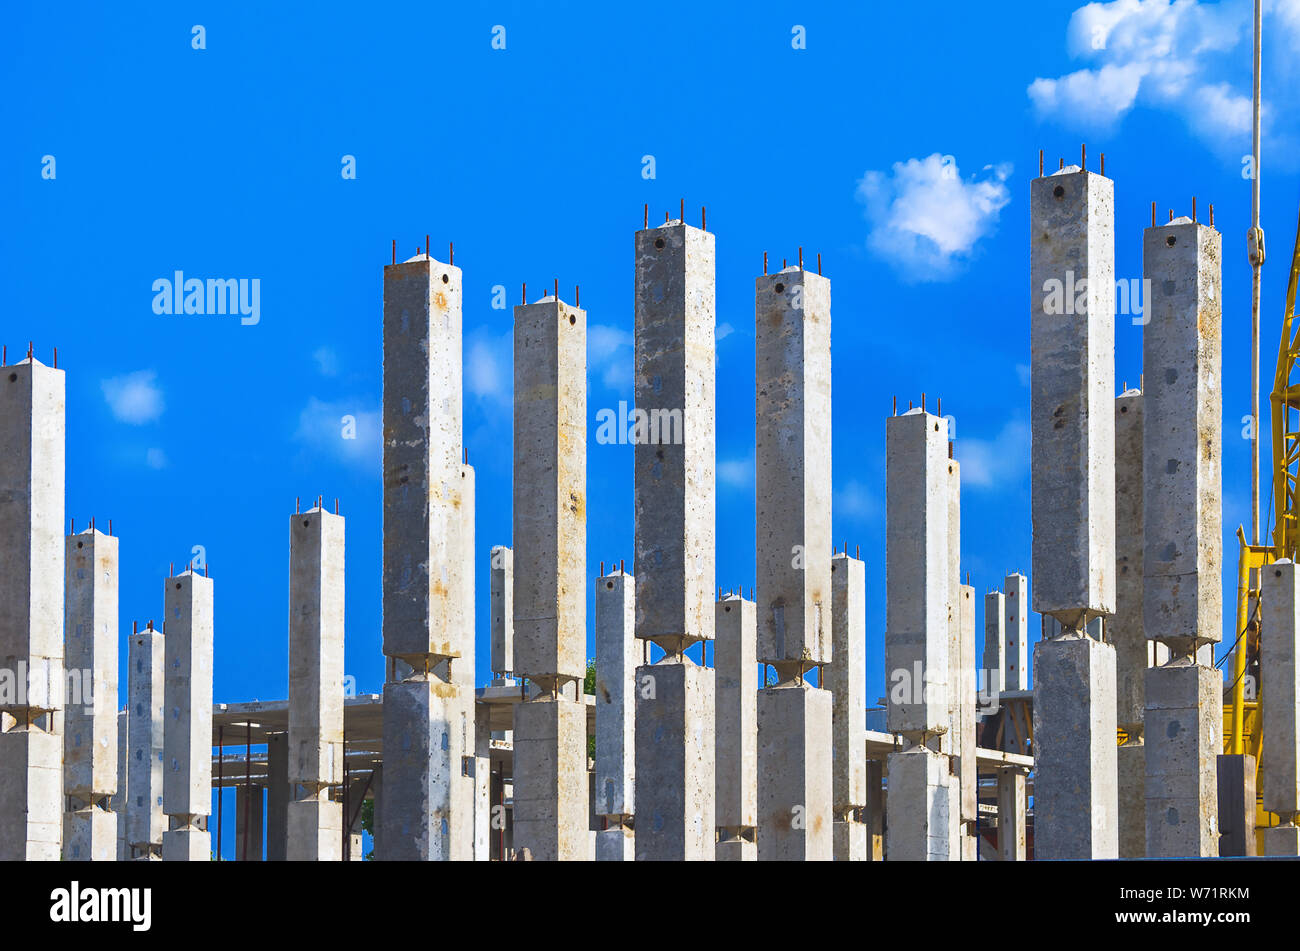 Des colonnes de béton armé verticale avec les armatures at Construction Site, ciel bleu et nuages blancs en arrière-plan. L'immobilier, les immeubles d'habitation Urb Banque D'Images